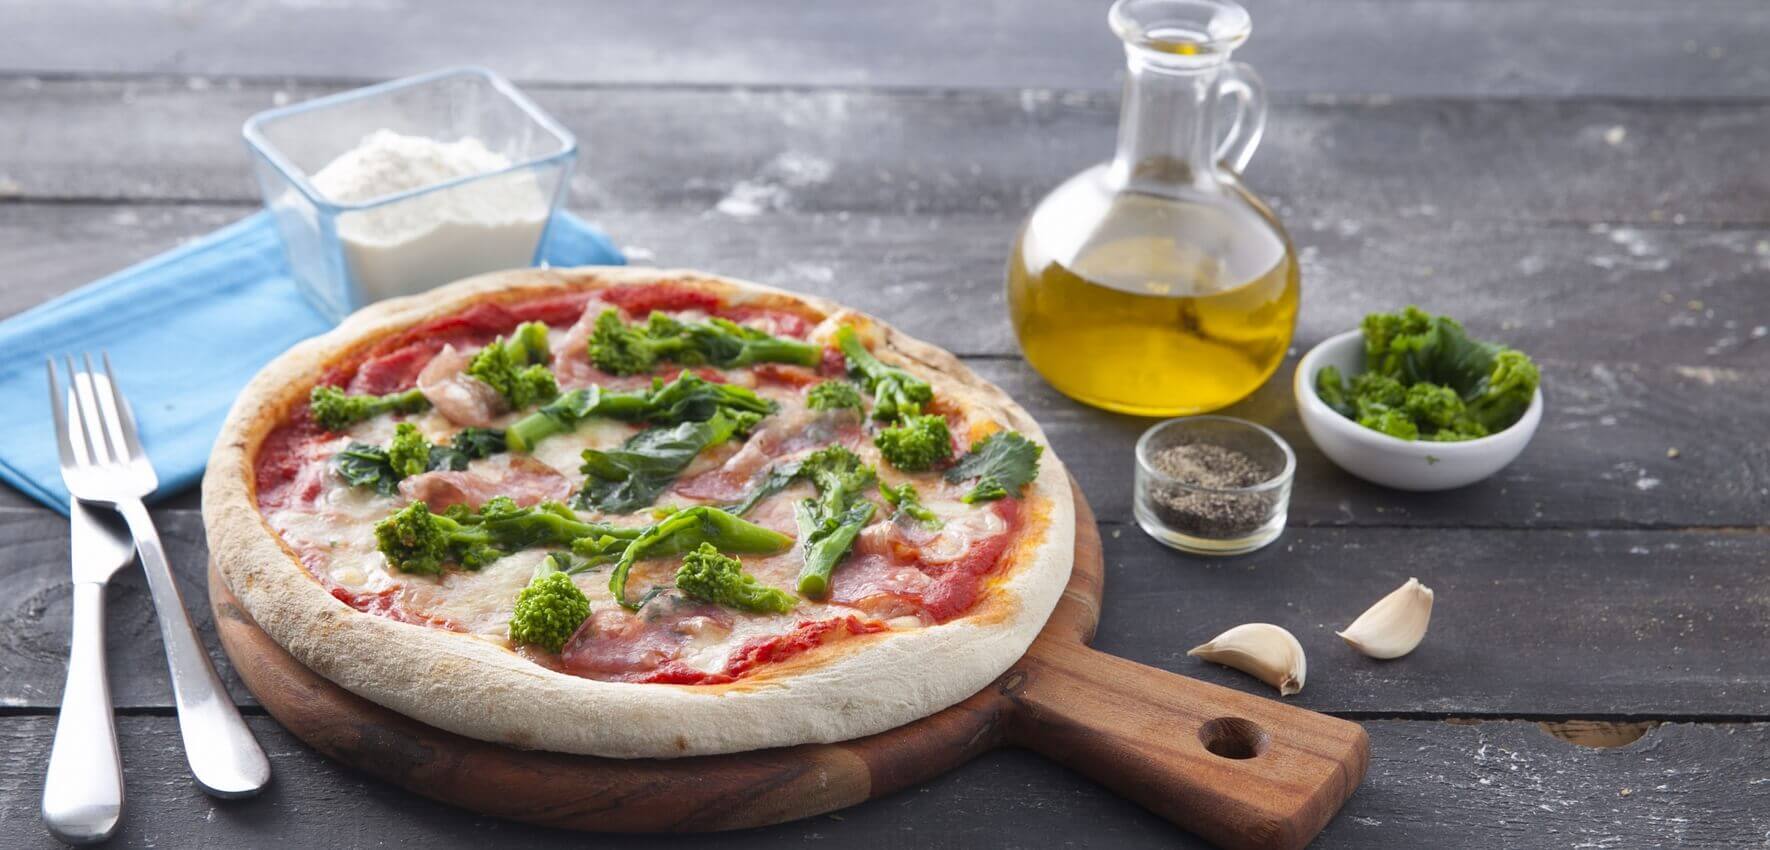 Pizza con salame tradizionale e broccoli